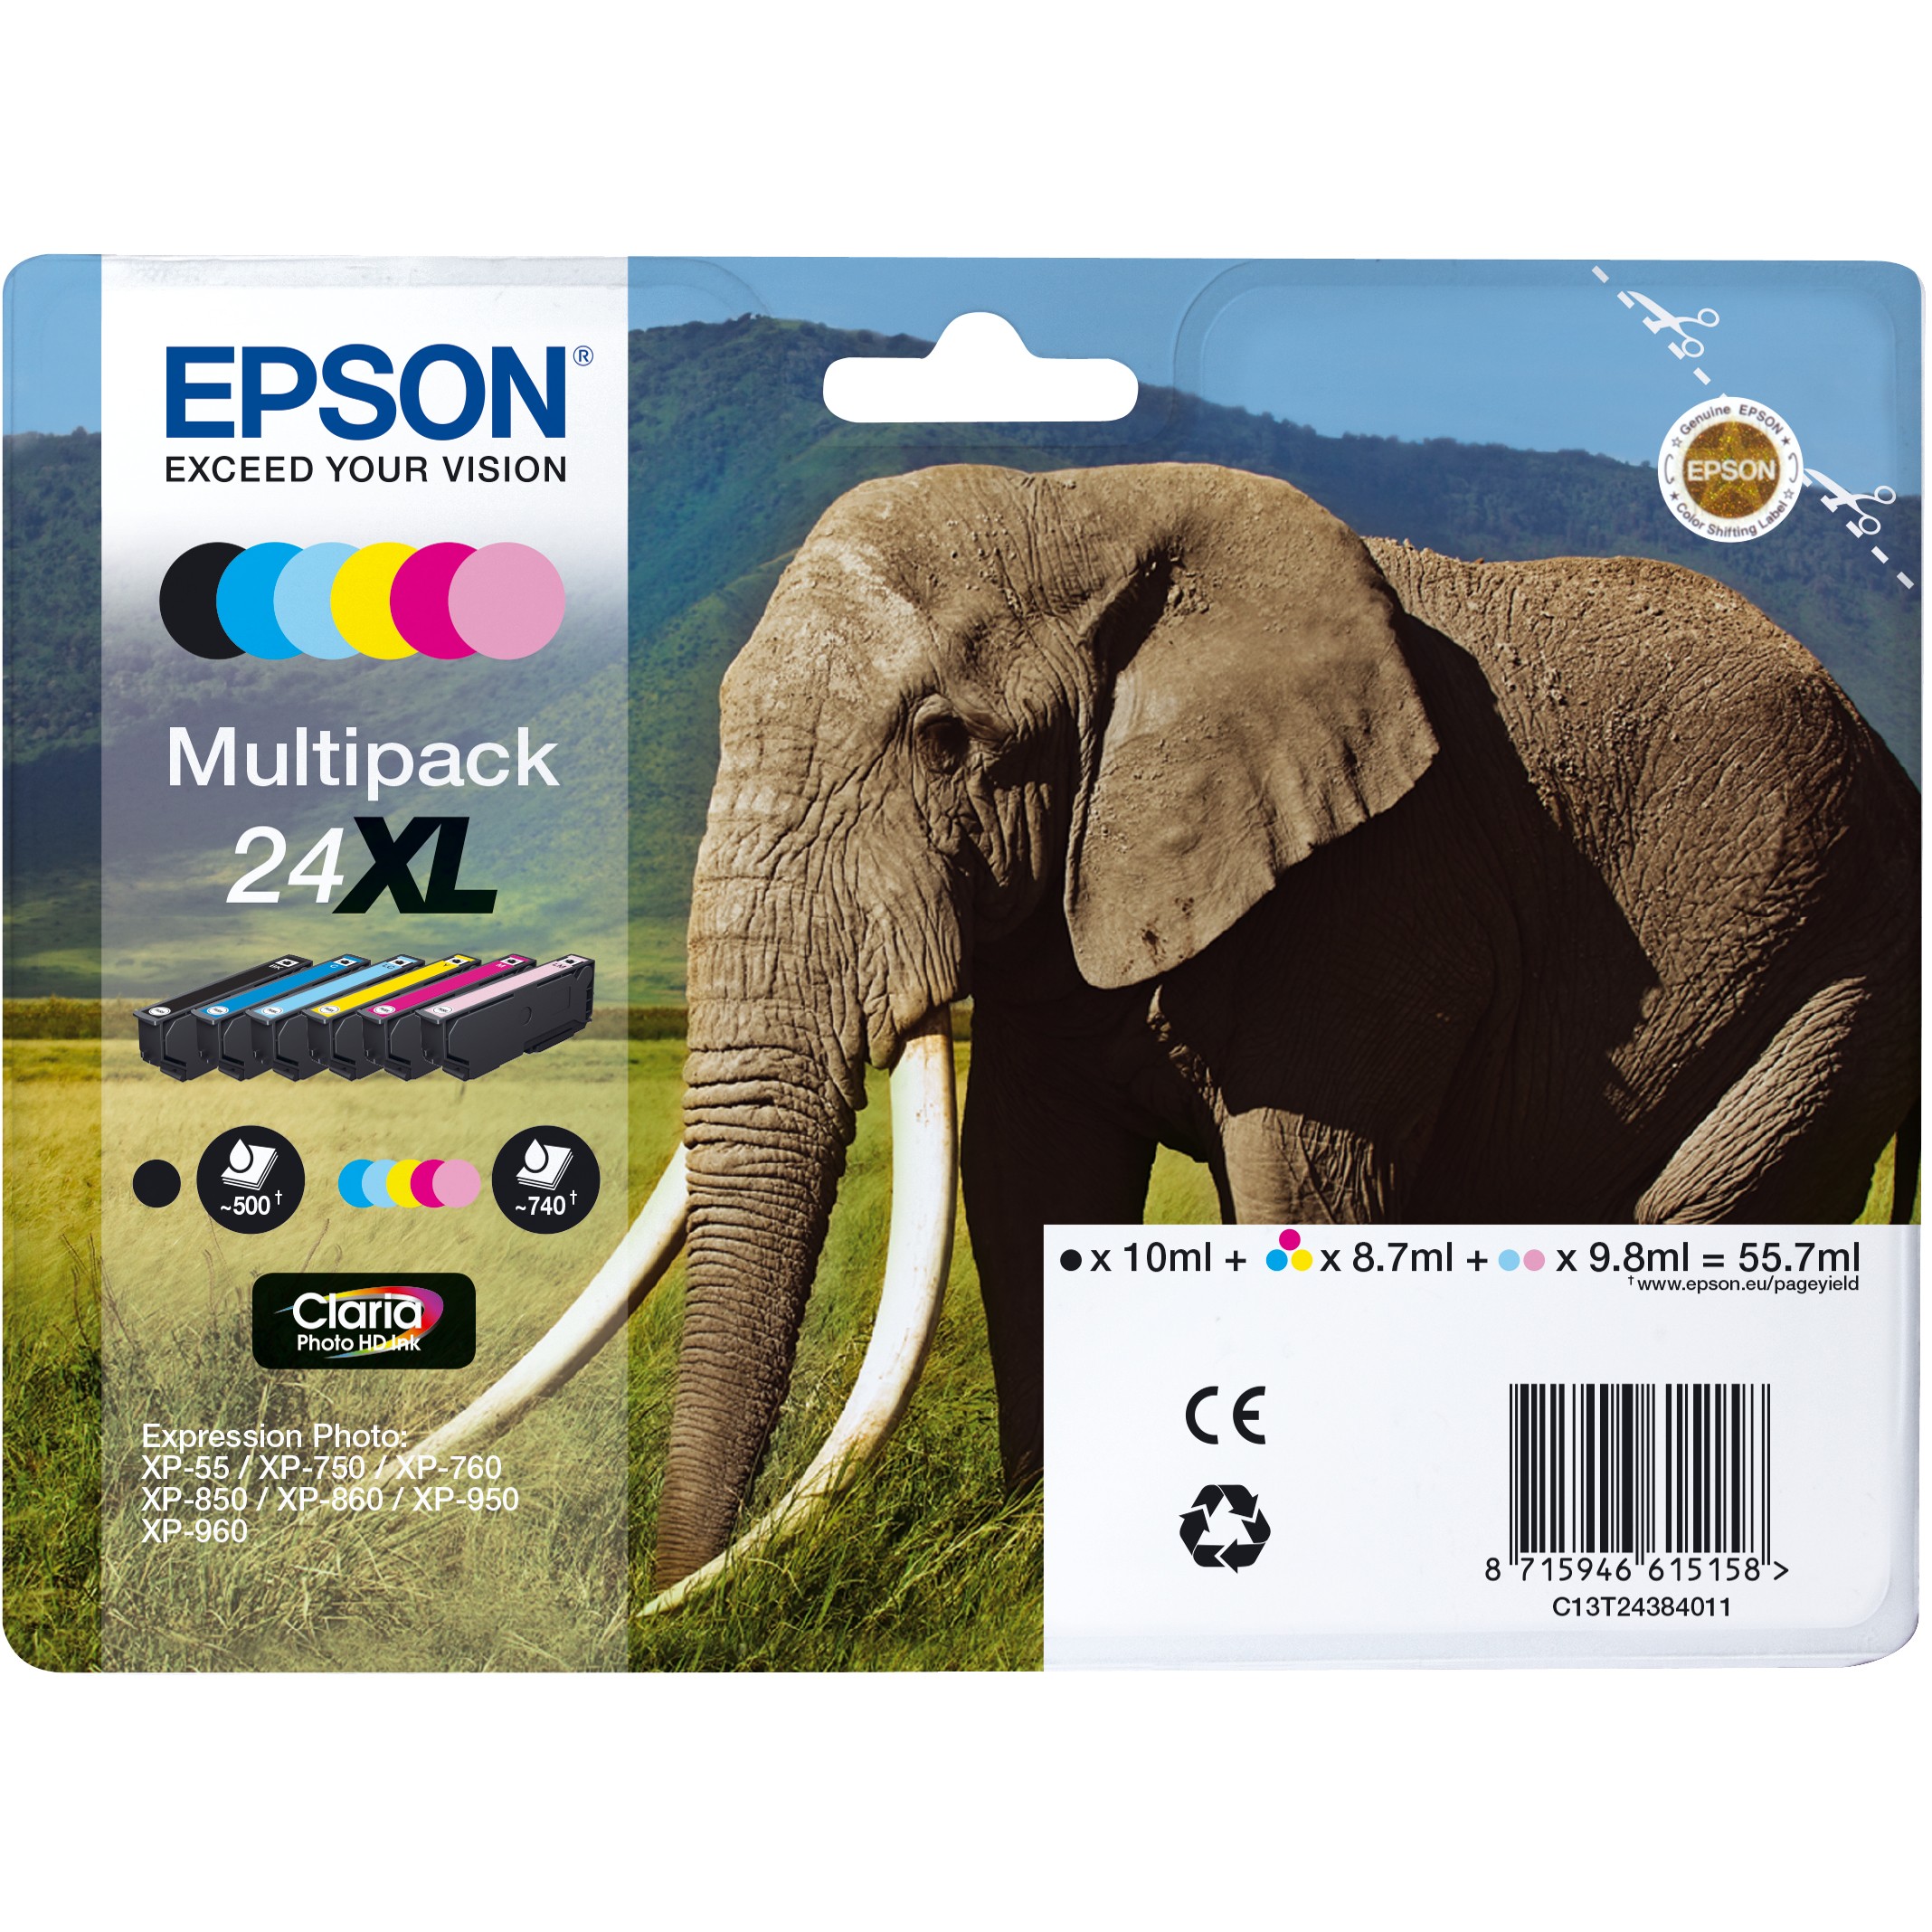 Epson C13T24384011, Tinte, Epson Elephant C13T24384011  (BILD1)